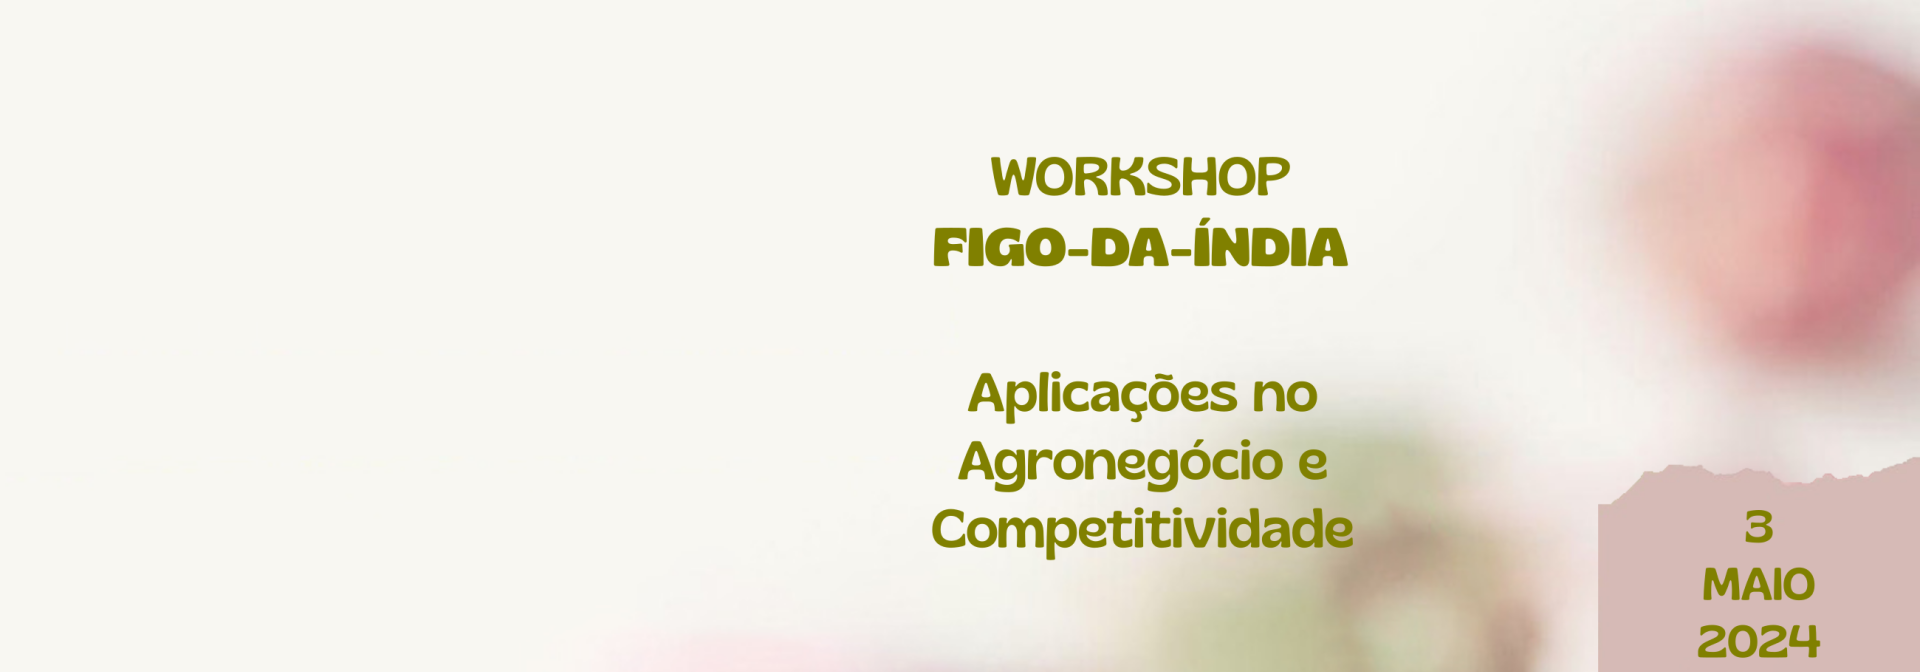 Workshop Figo-da-Índia